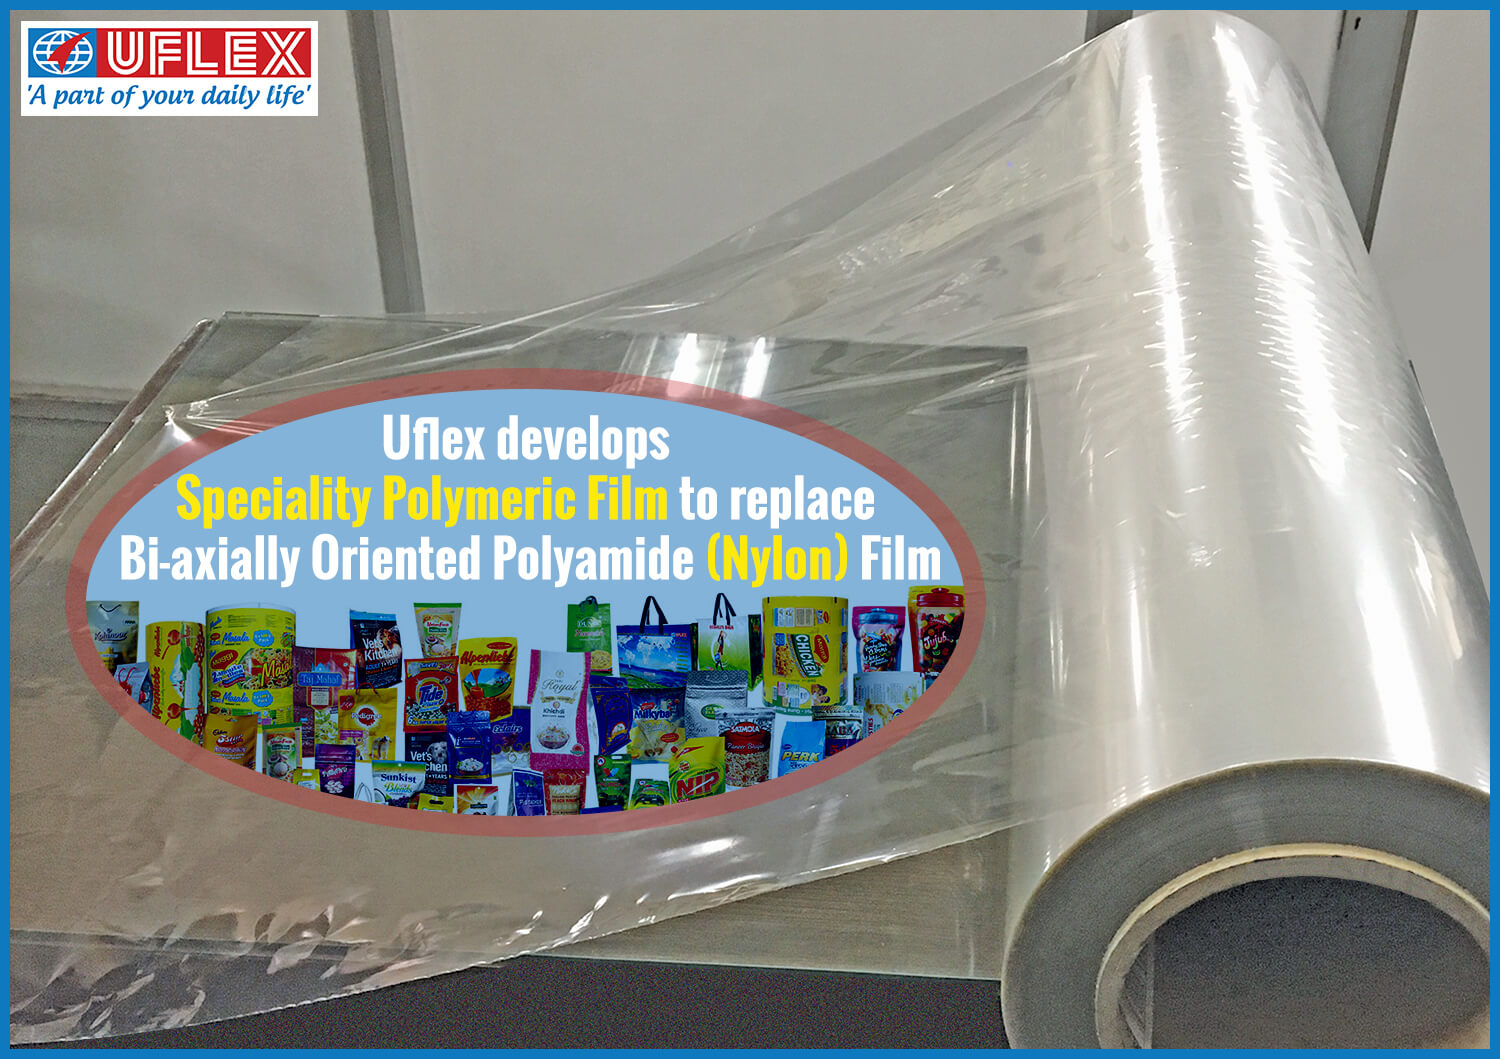 Uflex develops Speciality Polymeric Film to replace Nylon Film